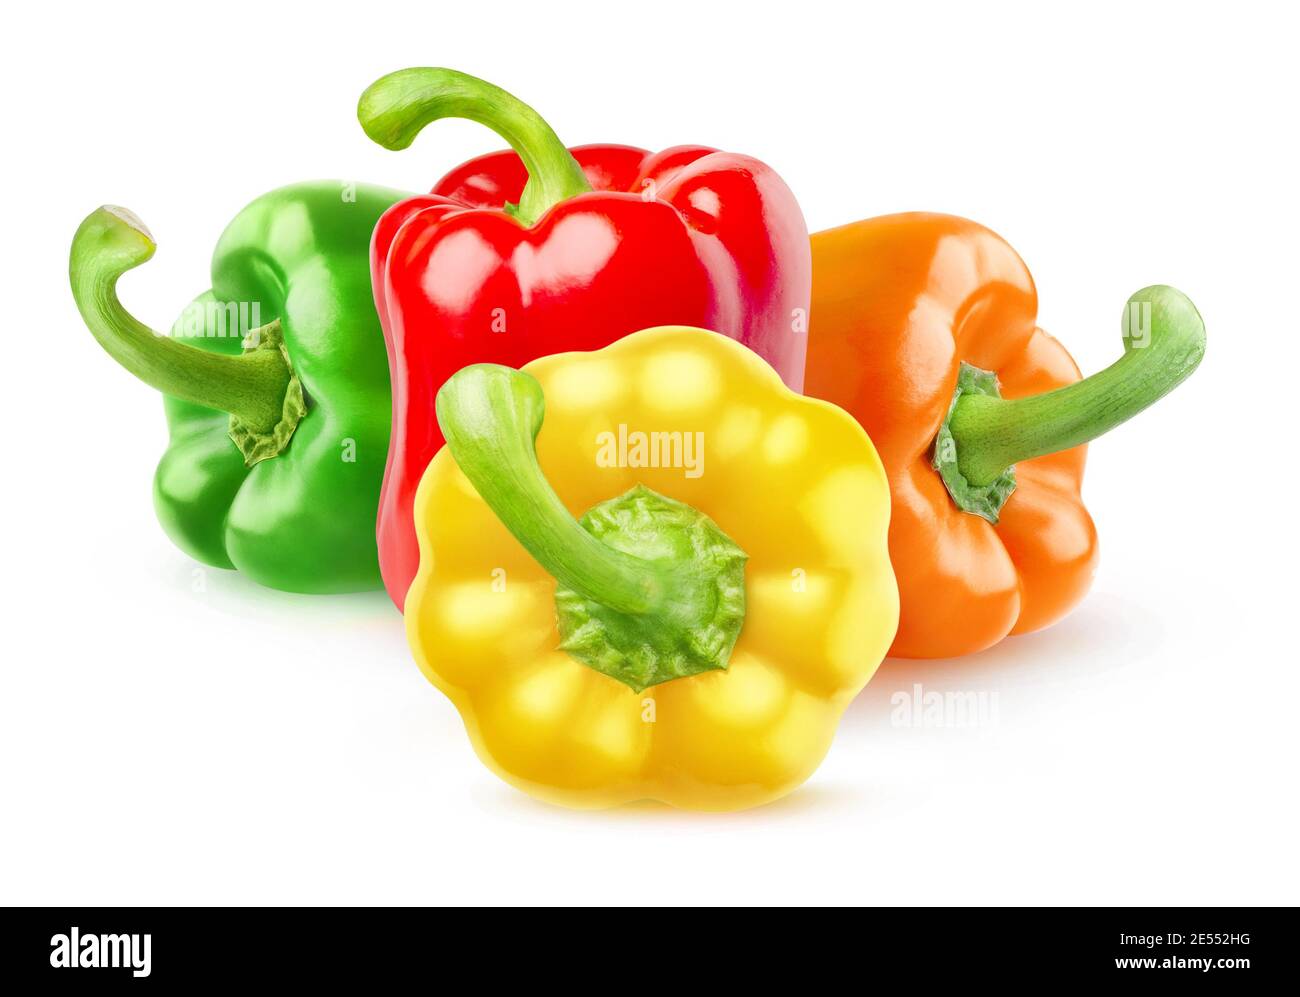 Peperoni isolati. Quattro peperoni di diversi colori (rosso, verde, giallo, arancione) isolati su sfondo bianco Foto Stock